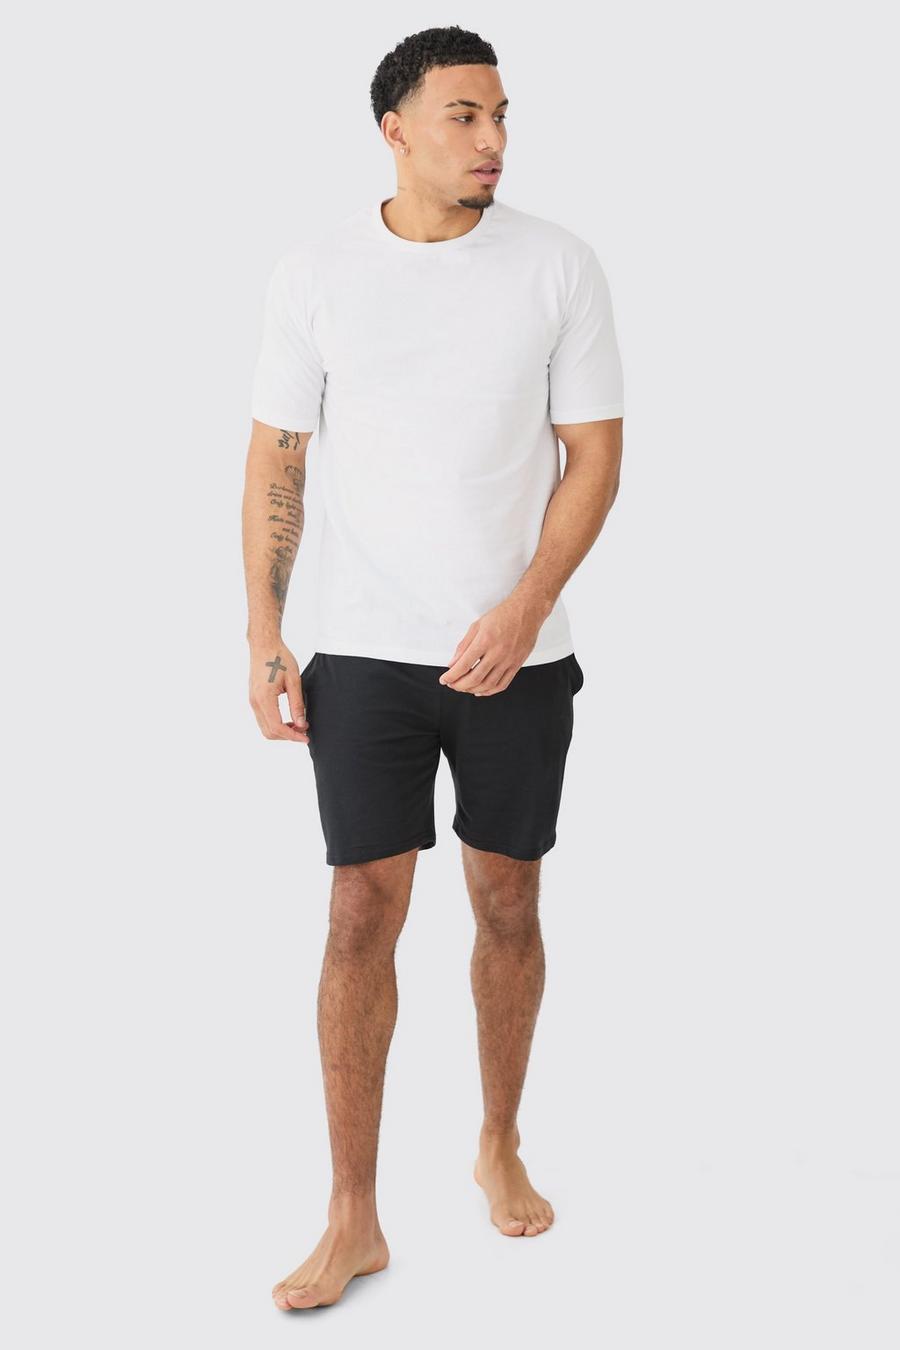 White T-Shirt En Shorts Lounge Set